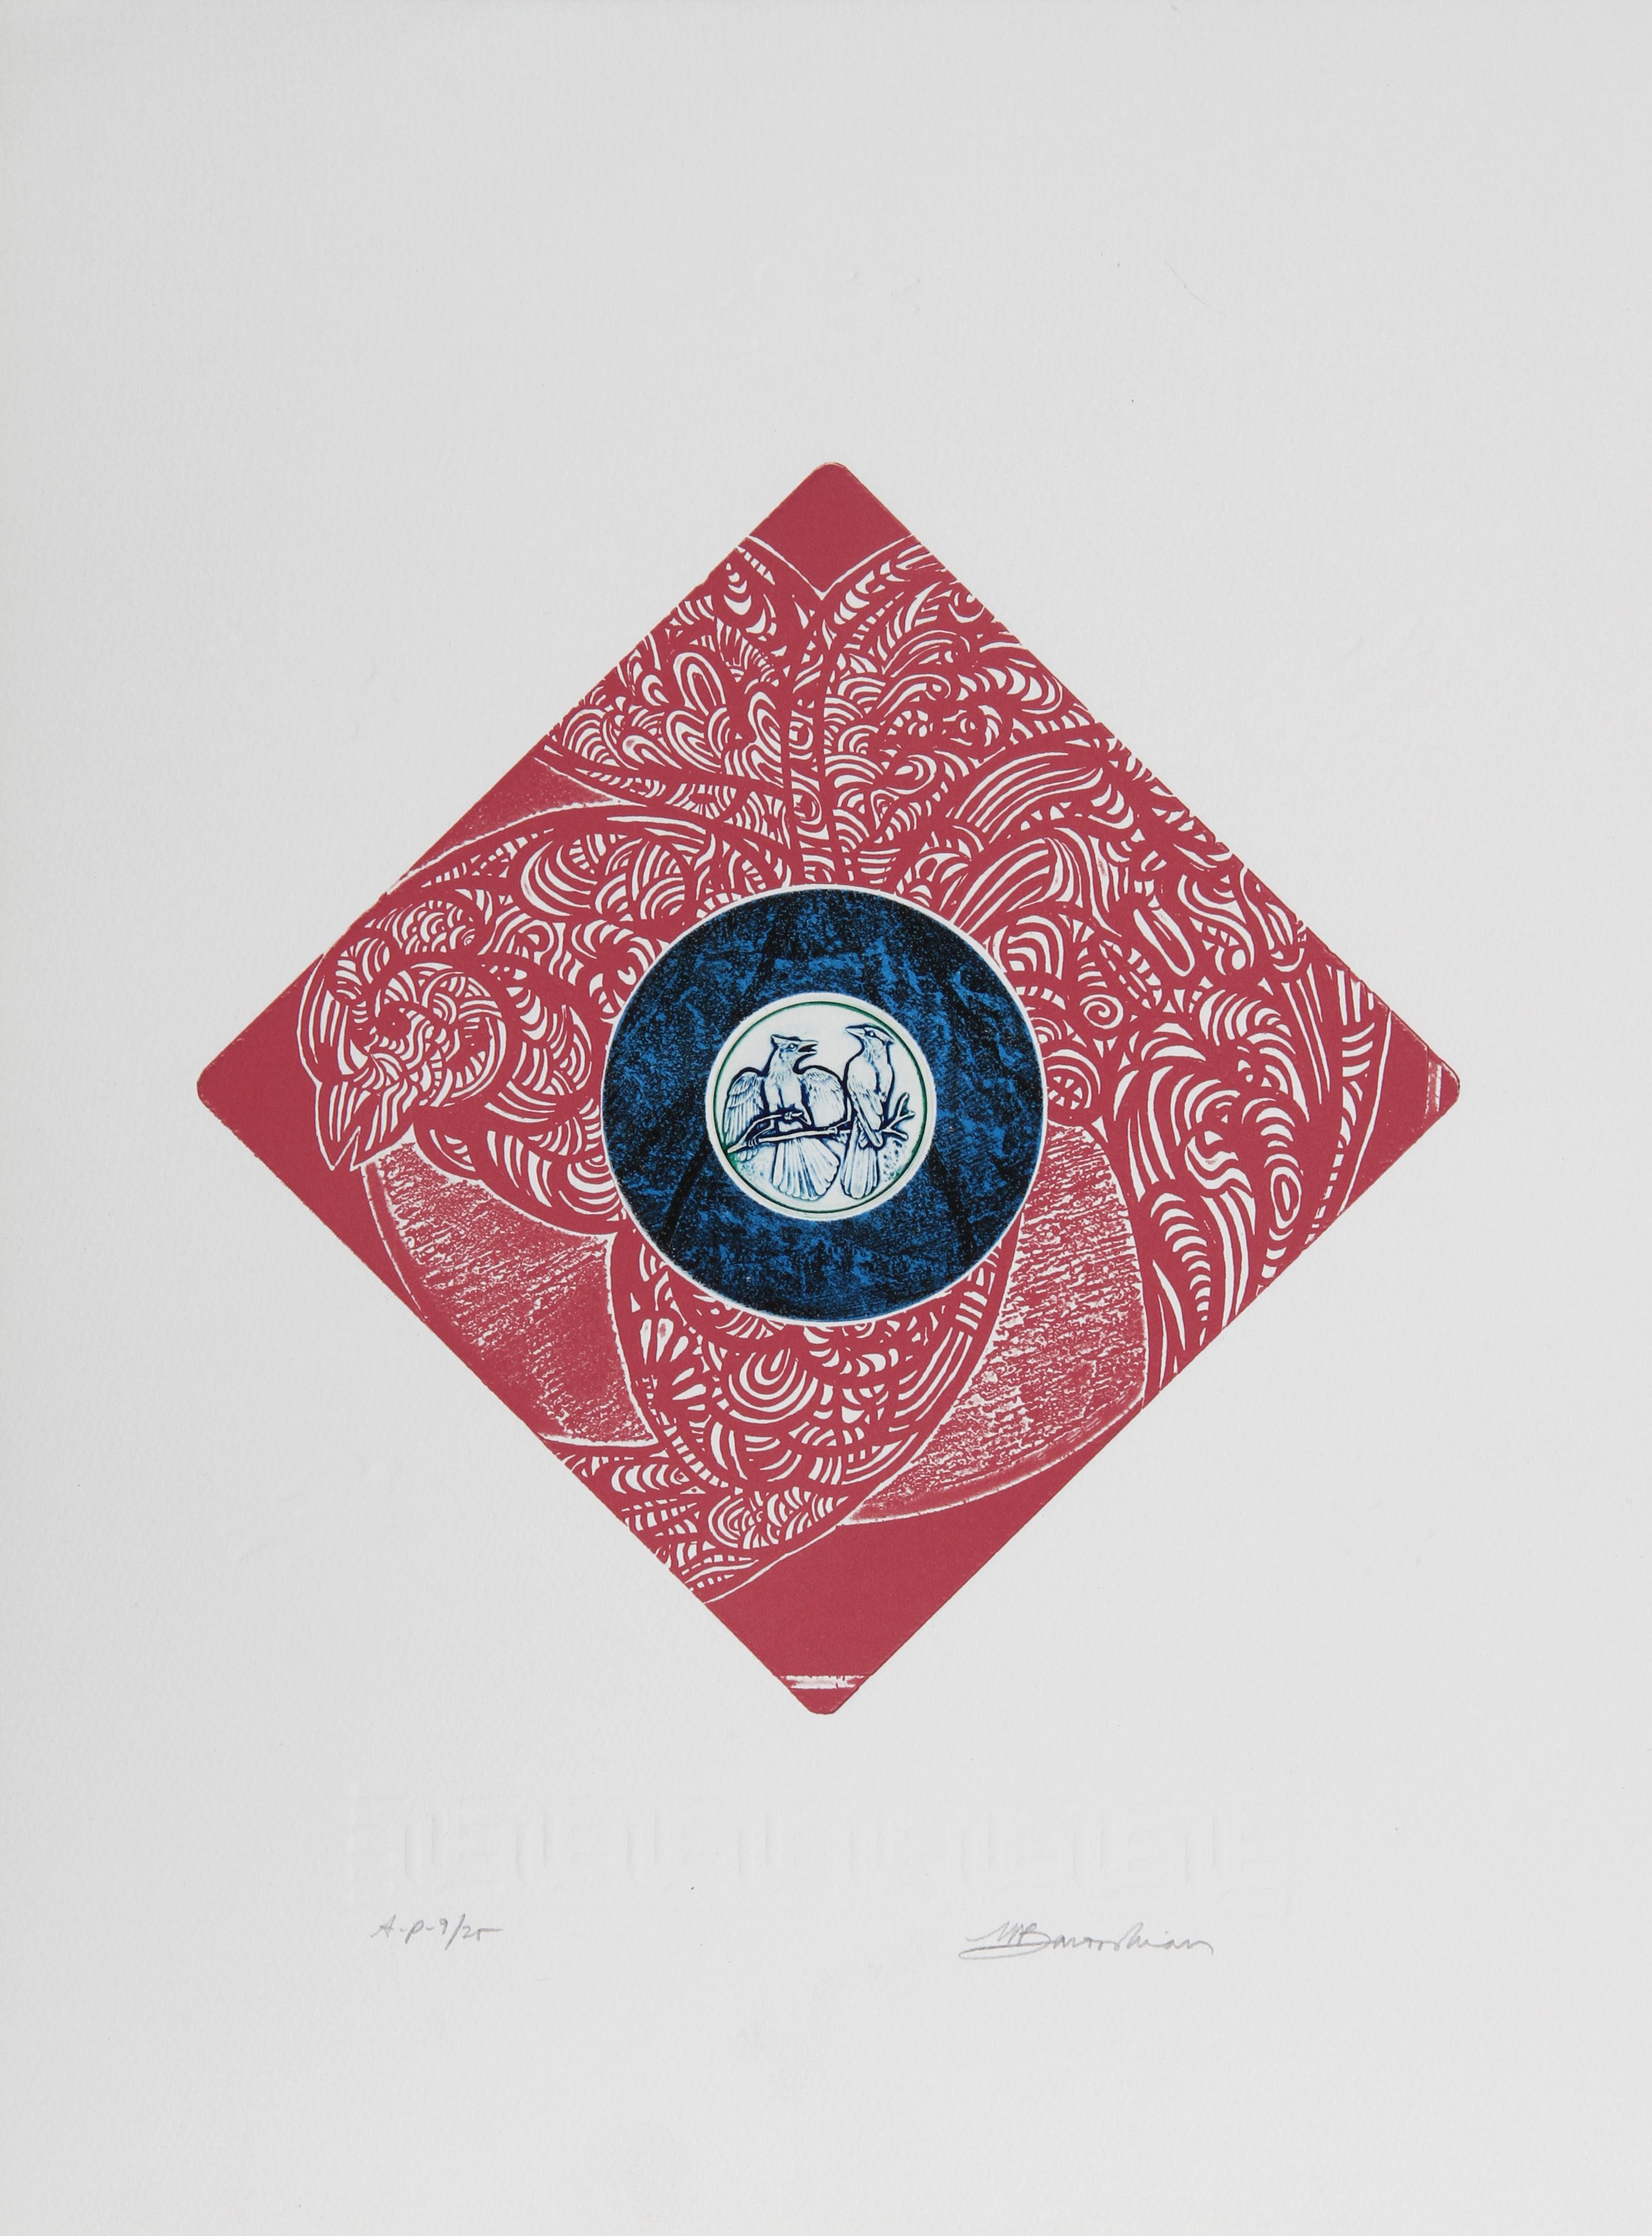 Des Jays bleus, gravure à l'aquatinte de Martin Barooshian